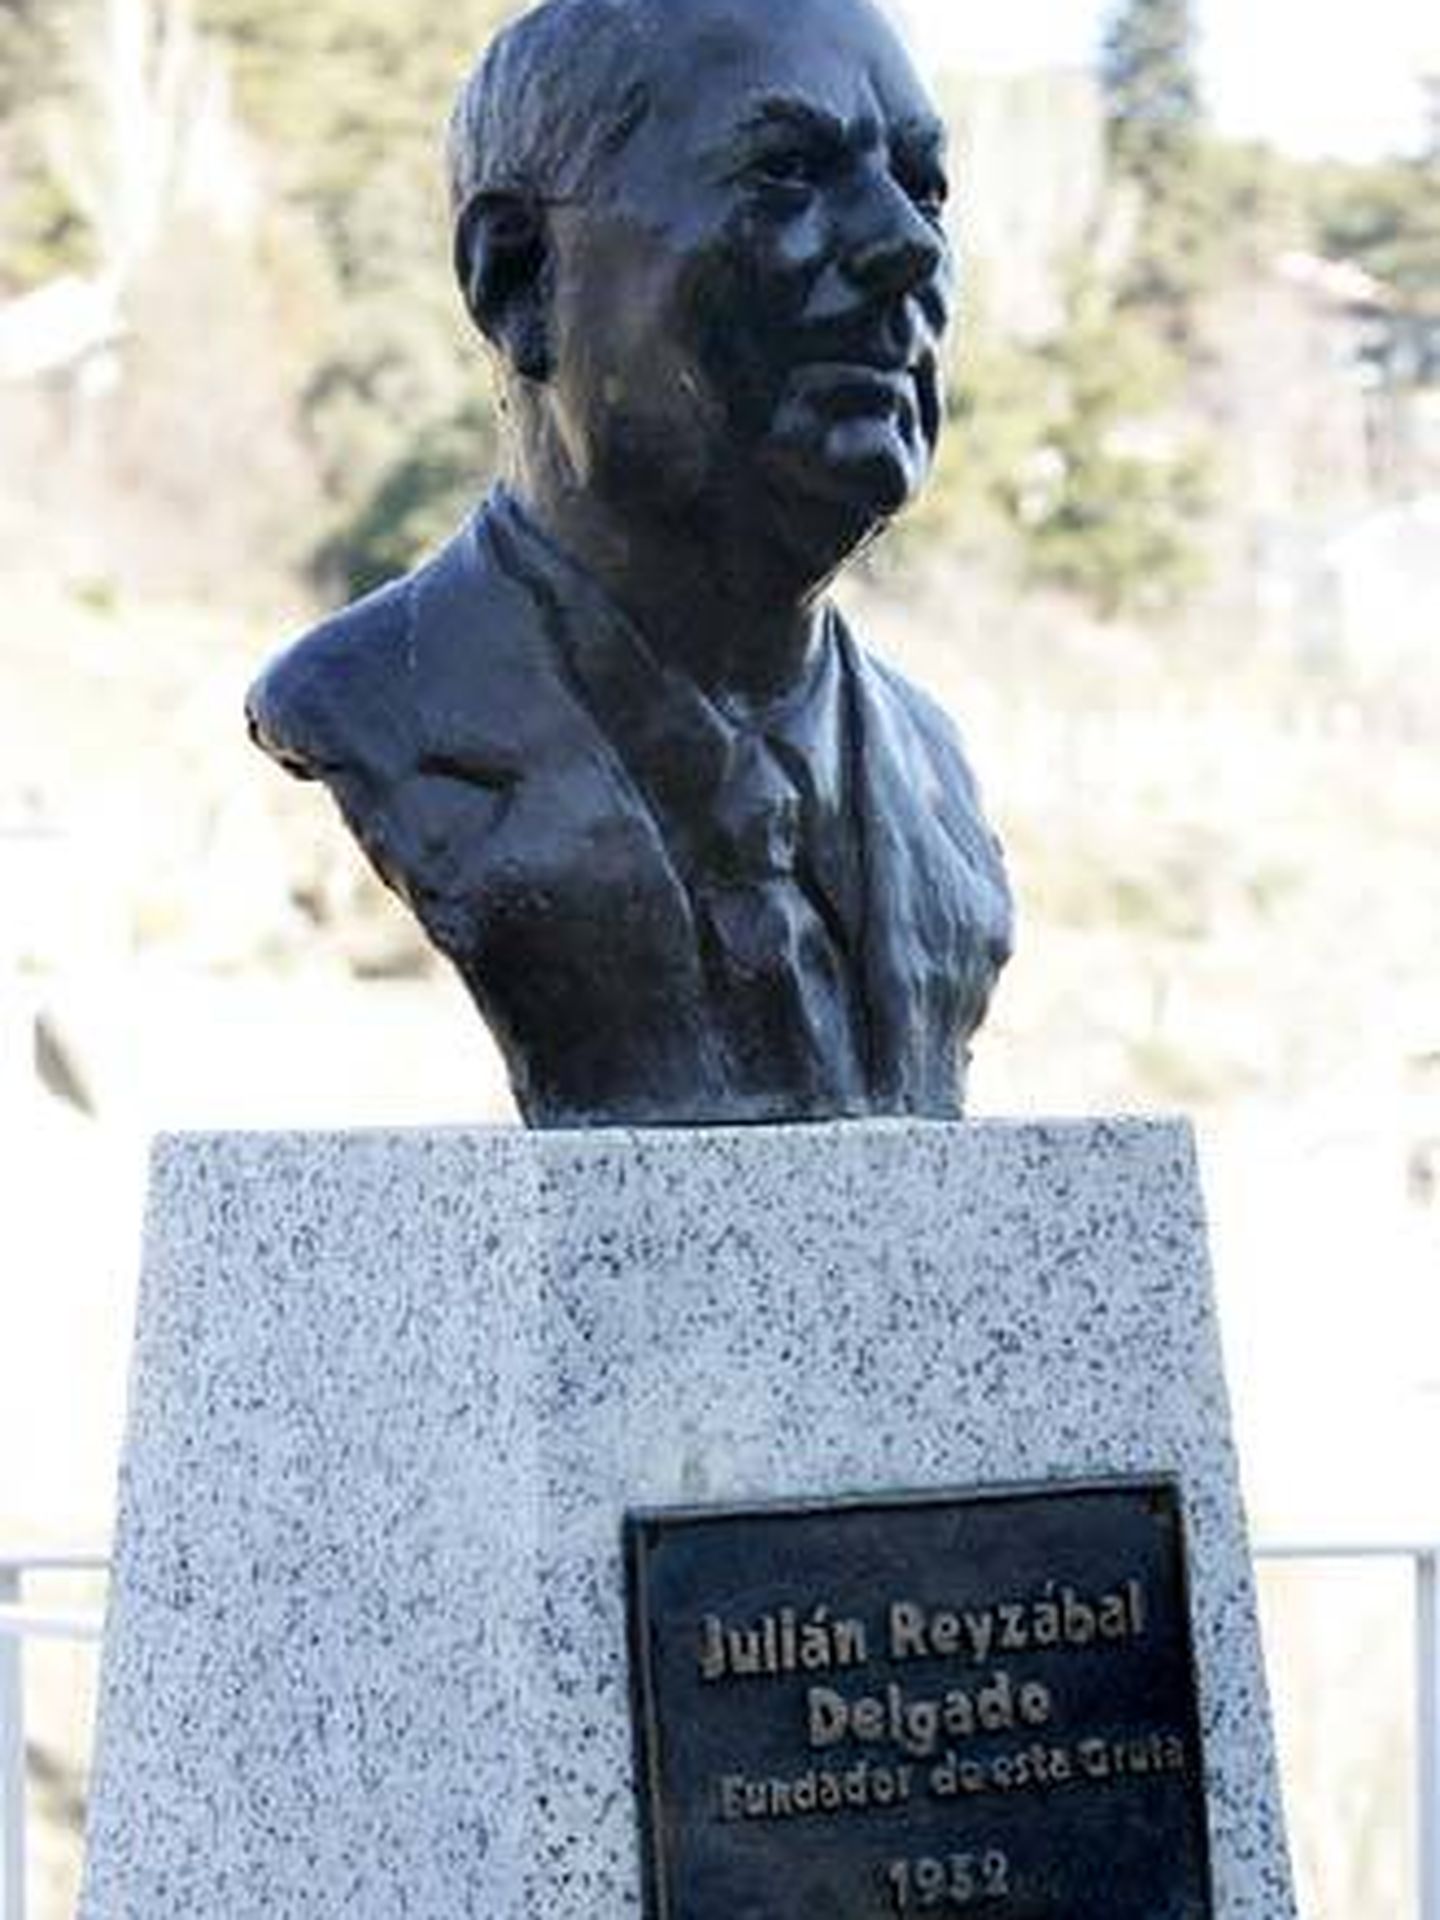 EL busto de Julián Reyzabal en la Gruta de Begoña.